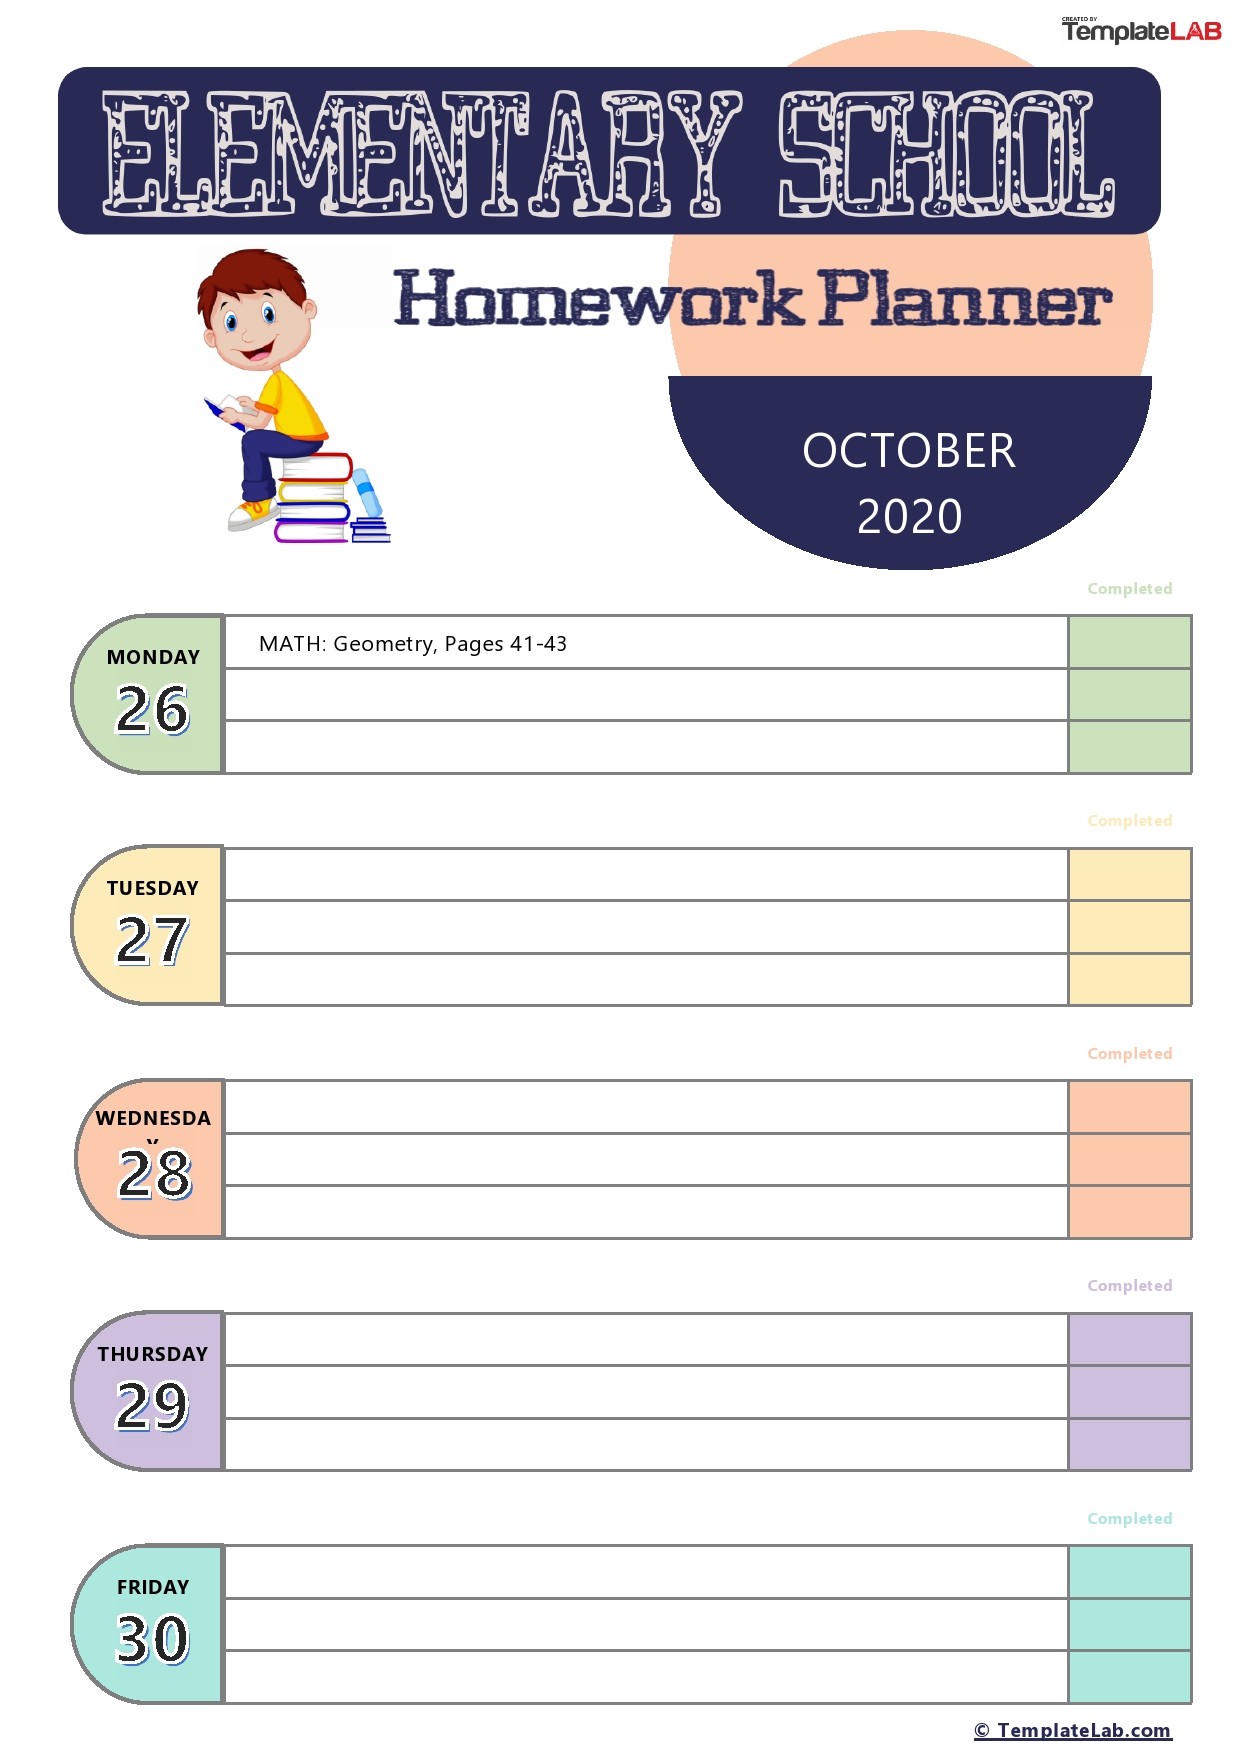 the school homework planner